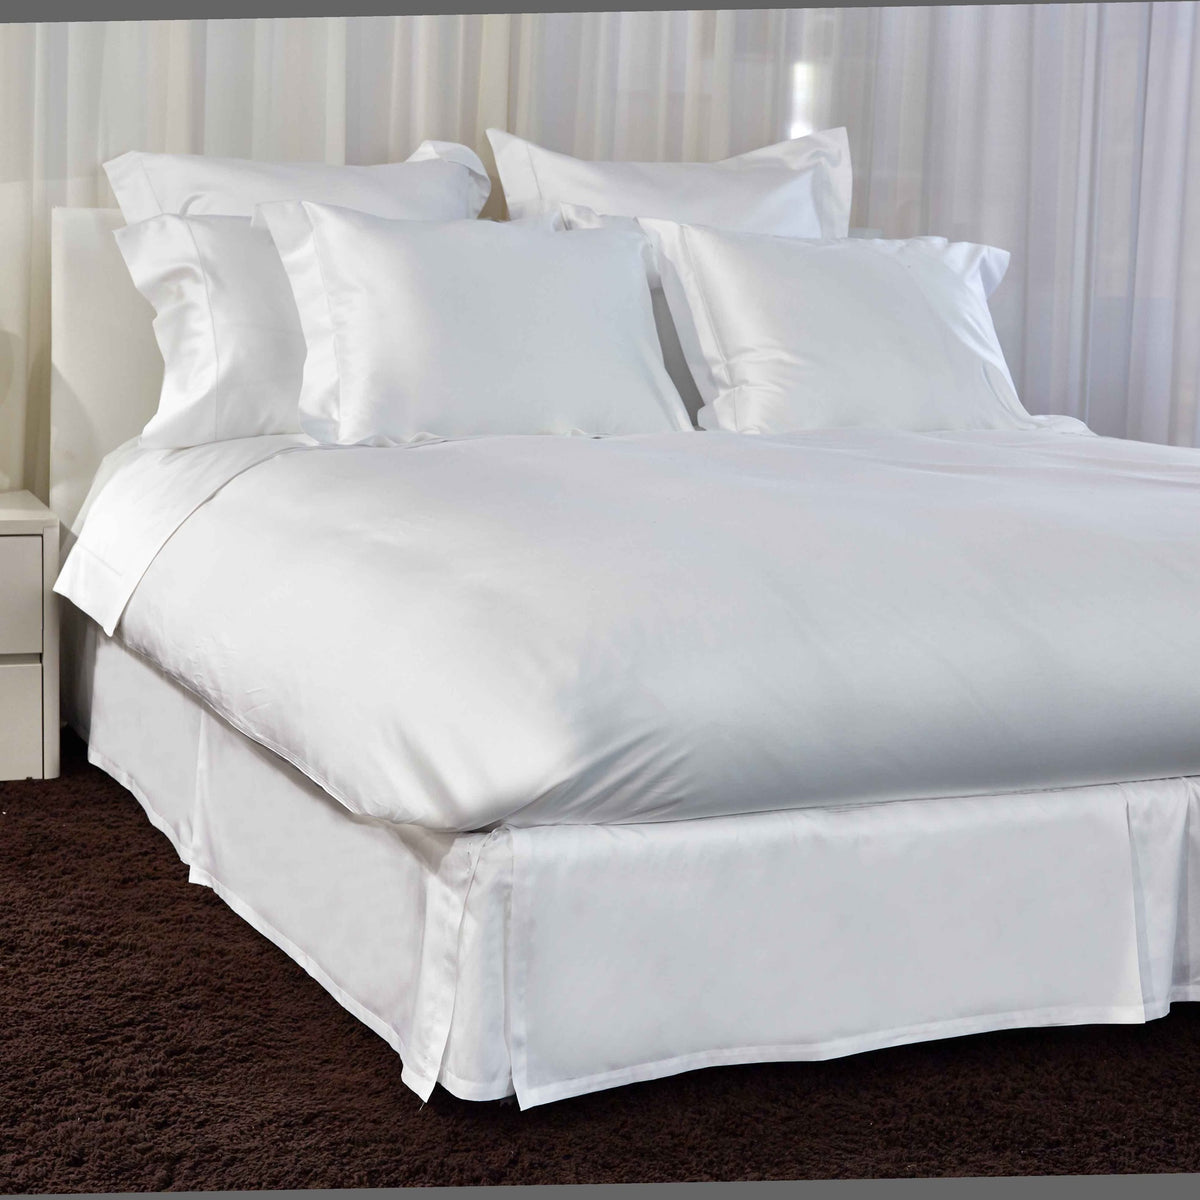 Full View Image of Signoria Raffaello Bedding in White Color